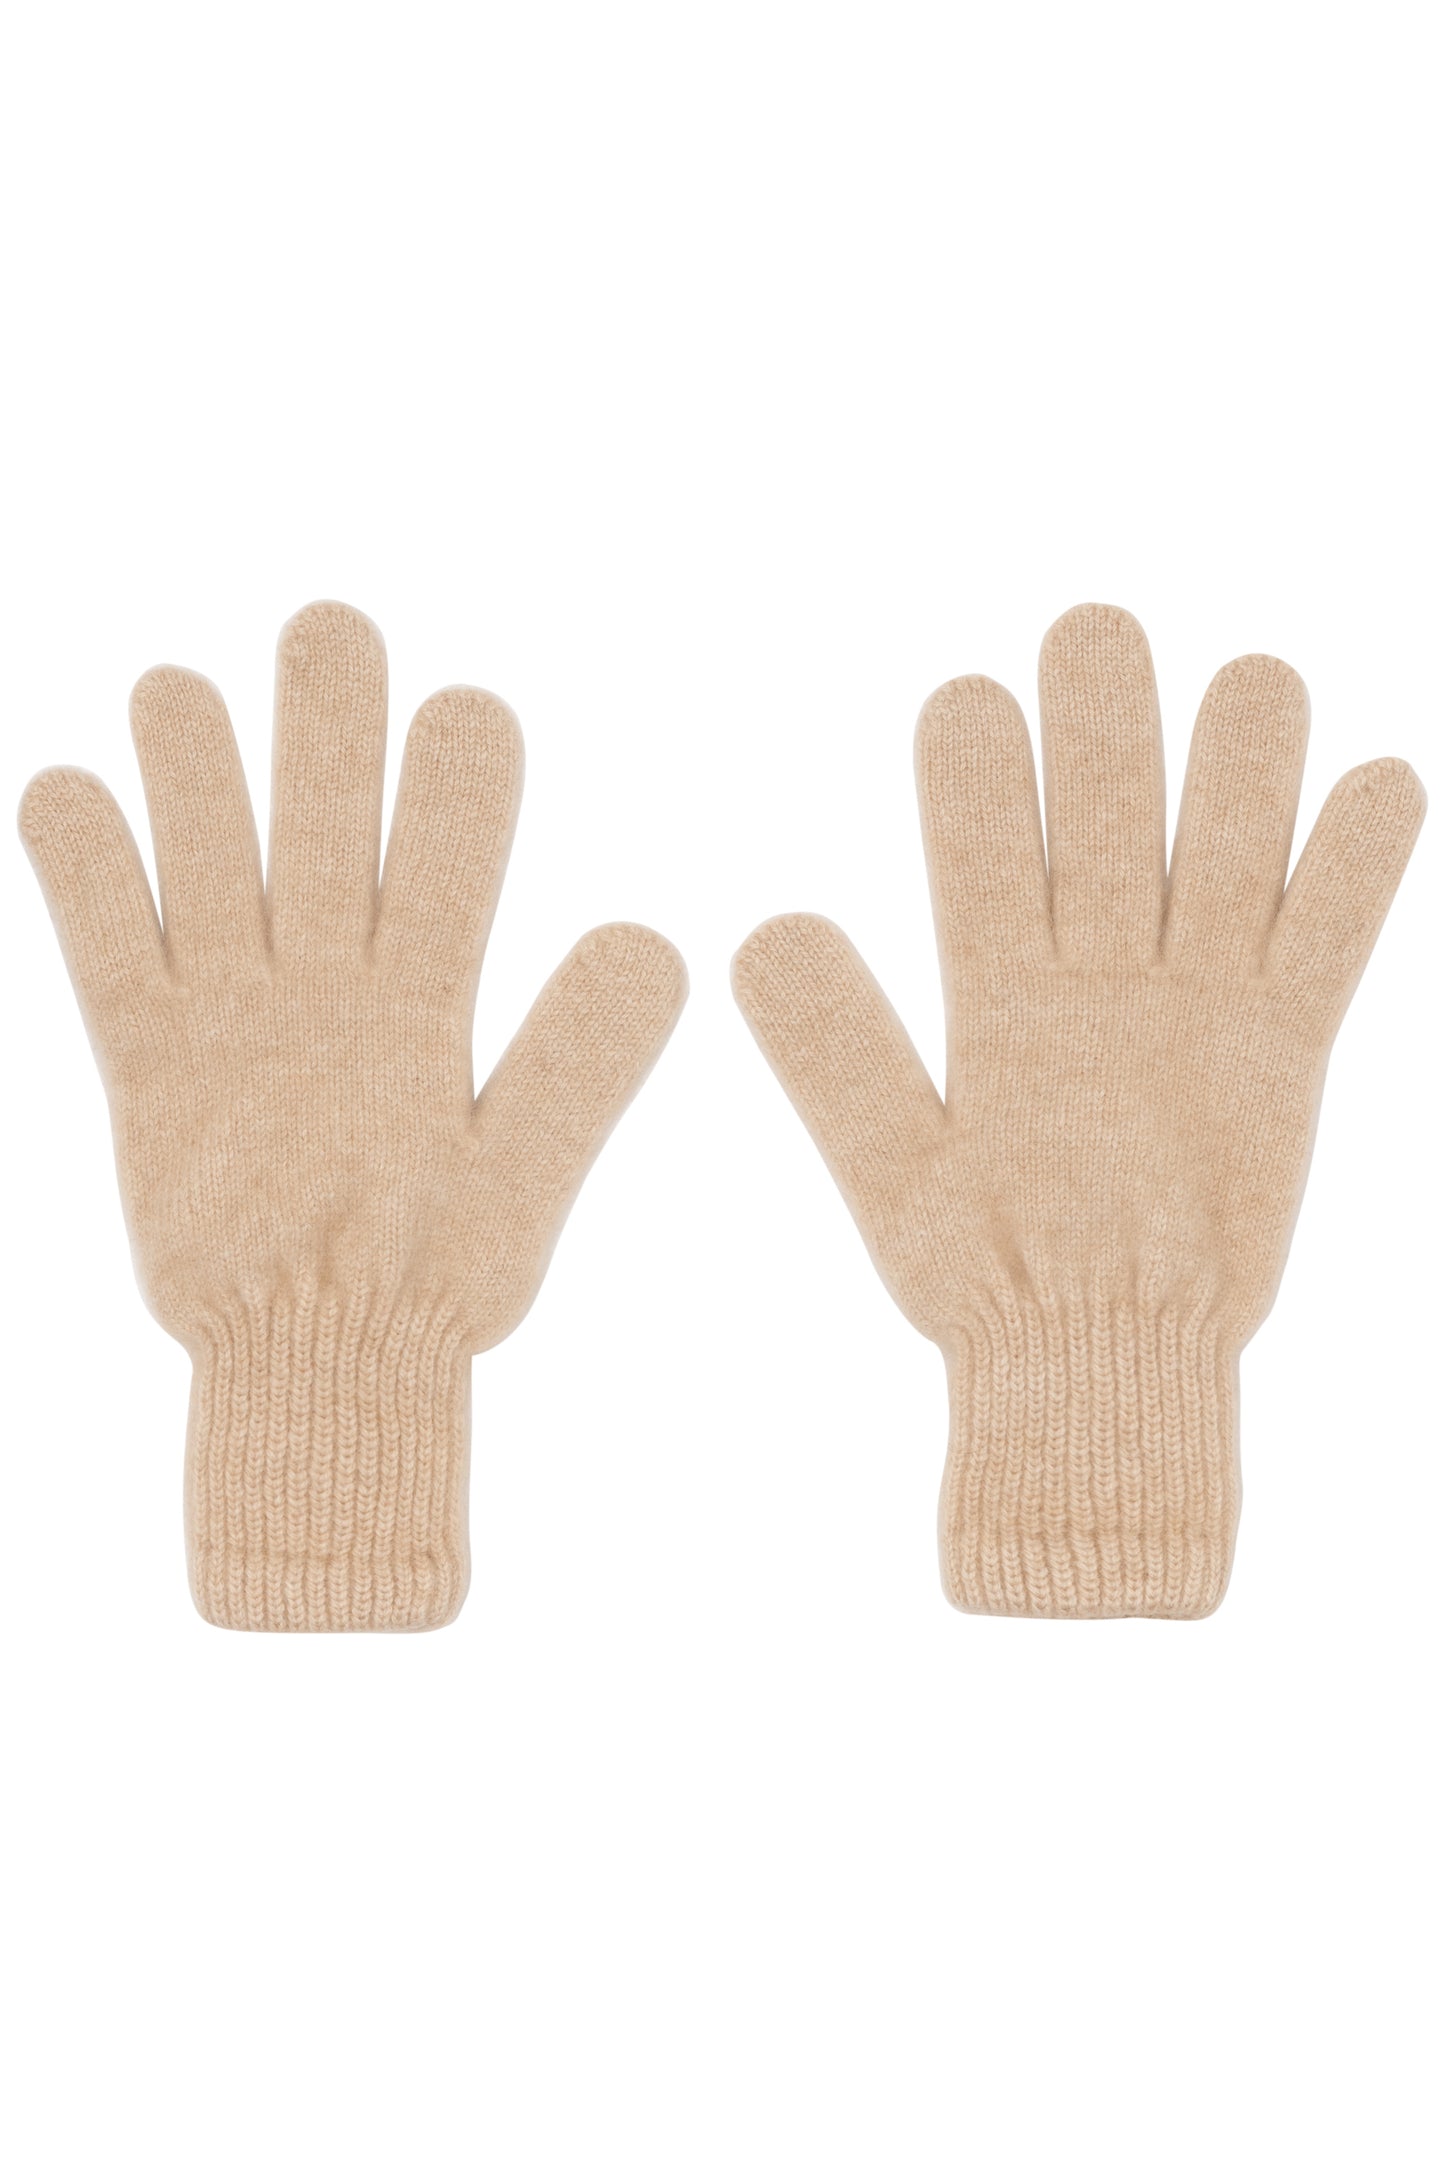 Beige 100% Cashmere Men's Gloves